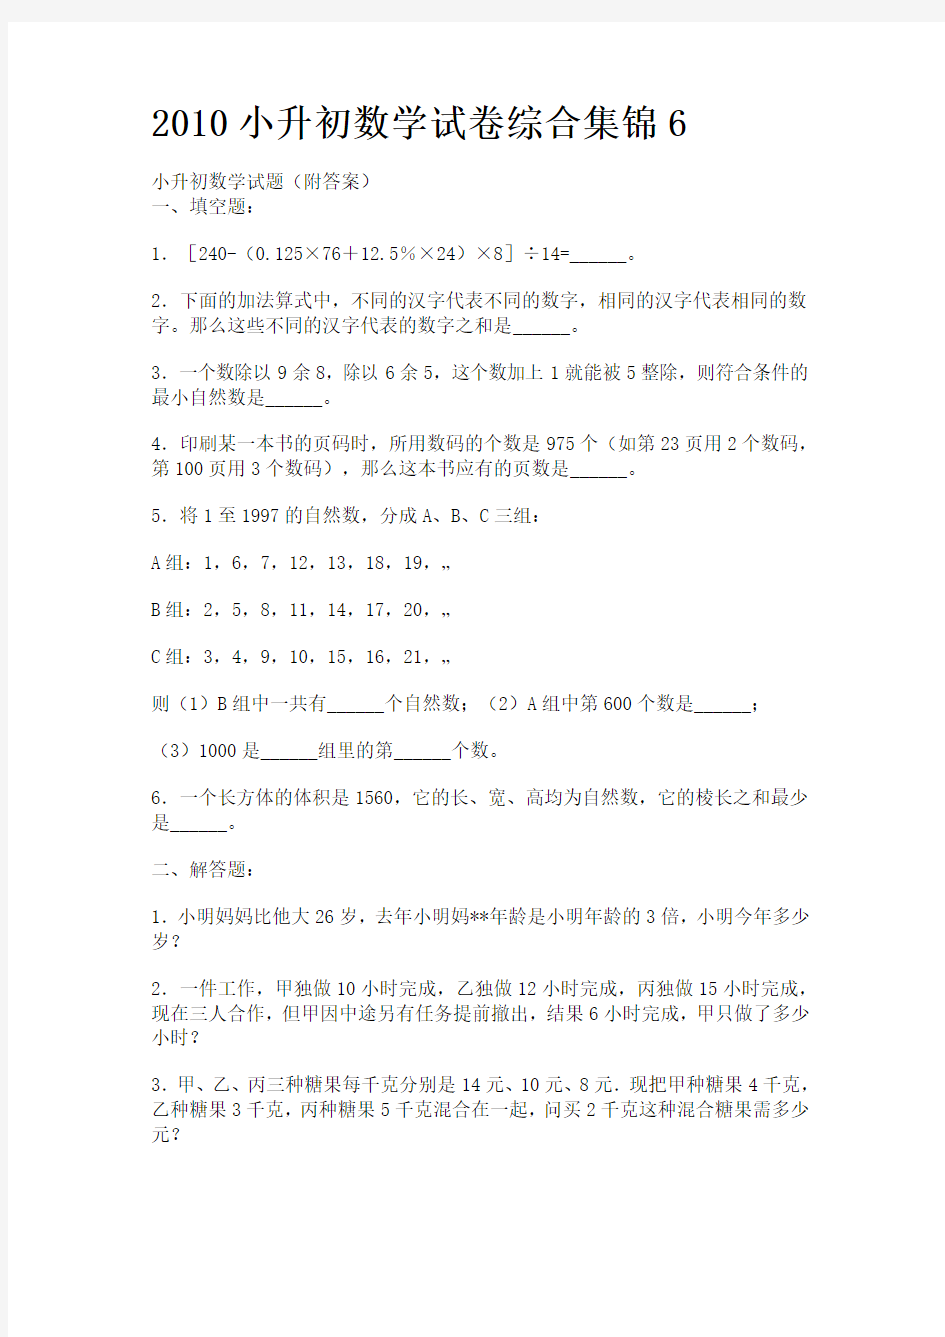 2010小升初数学试卷综合集锦(答案)6